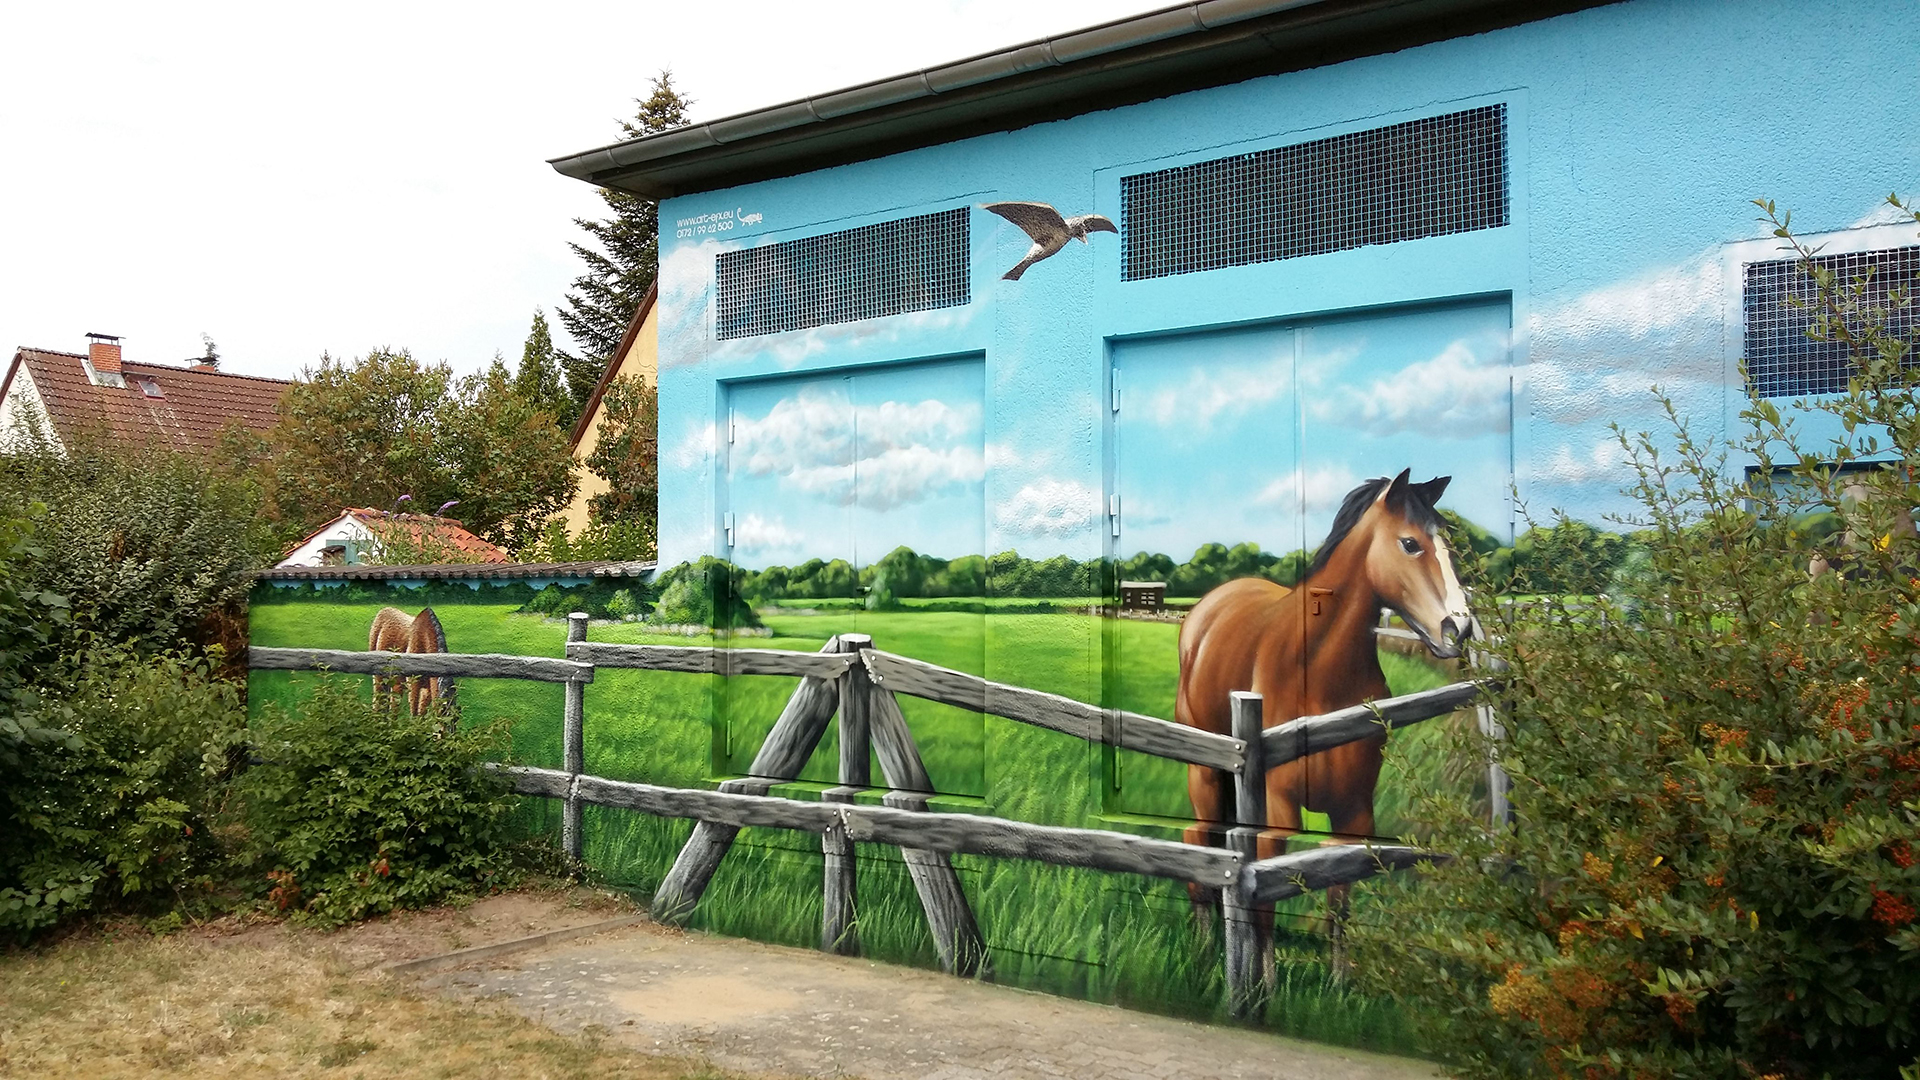 Die Wand eines kleinen Trafogebäudes ist realistisch bemalt. Die Szene zeigt eine Pferdekoppel mit einem Pferd.